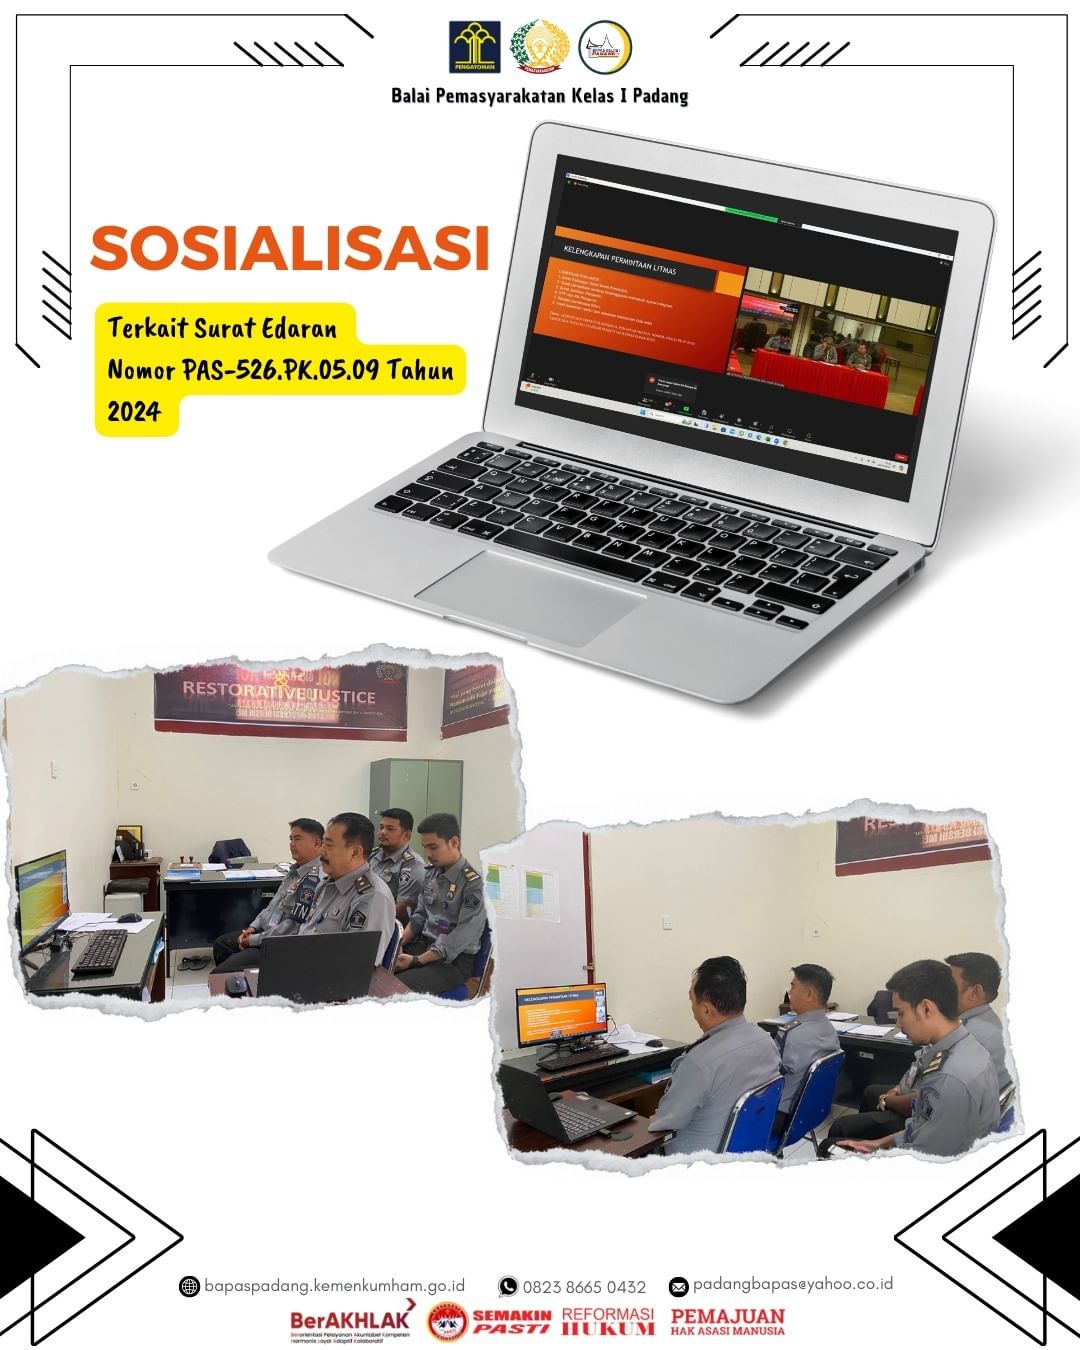 Bapas Kelas I Padang mengikuti kegiatan Sosialisasi Terkait Surat Edaran Nomor PAS-526.PK.05.09 Tahun 2024